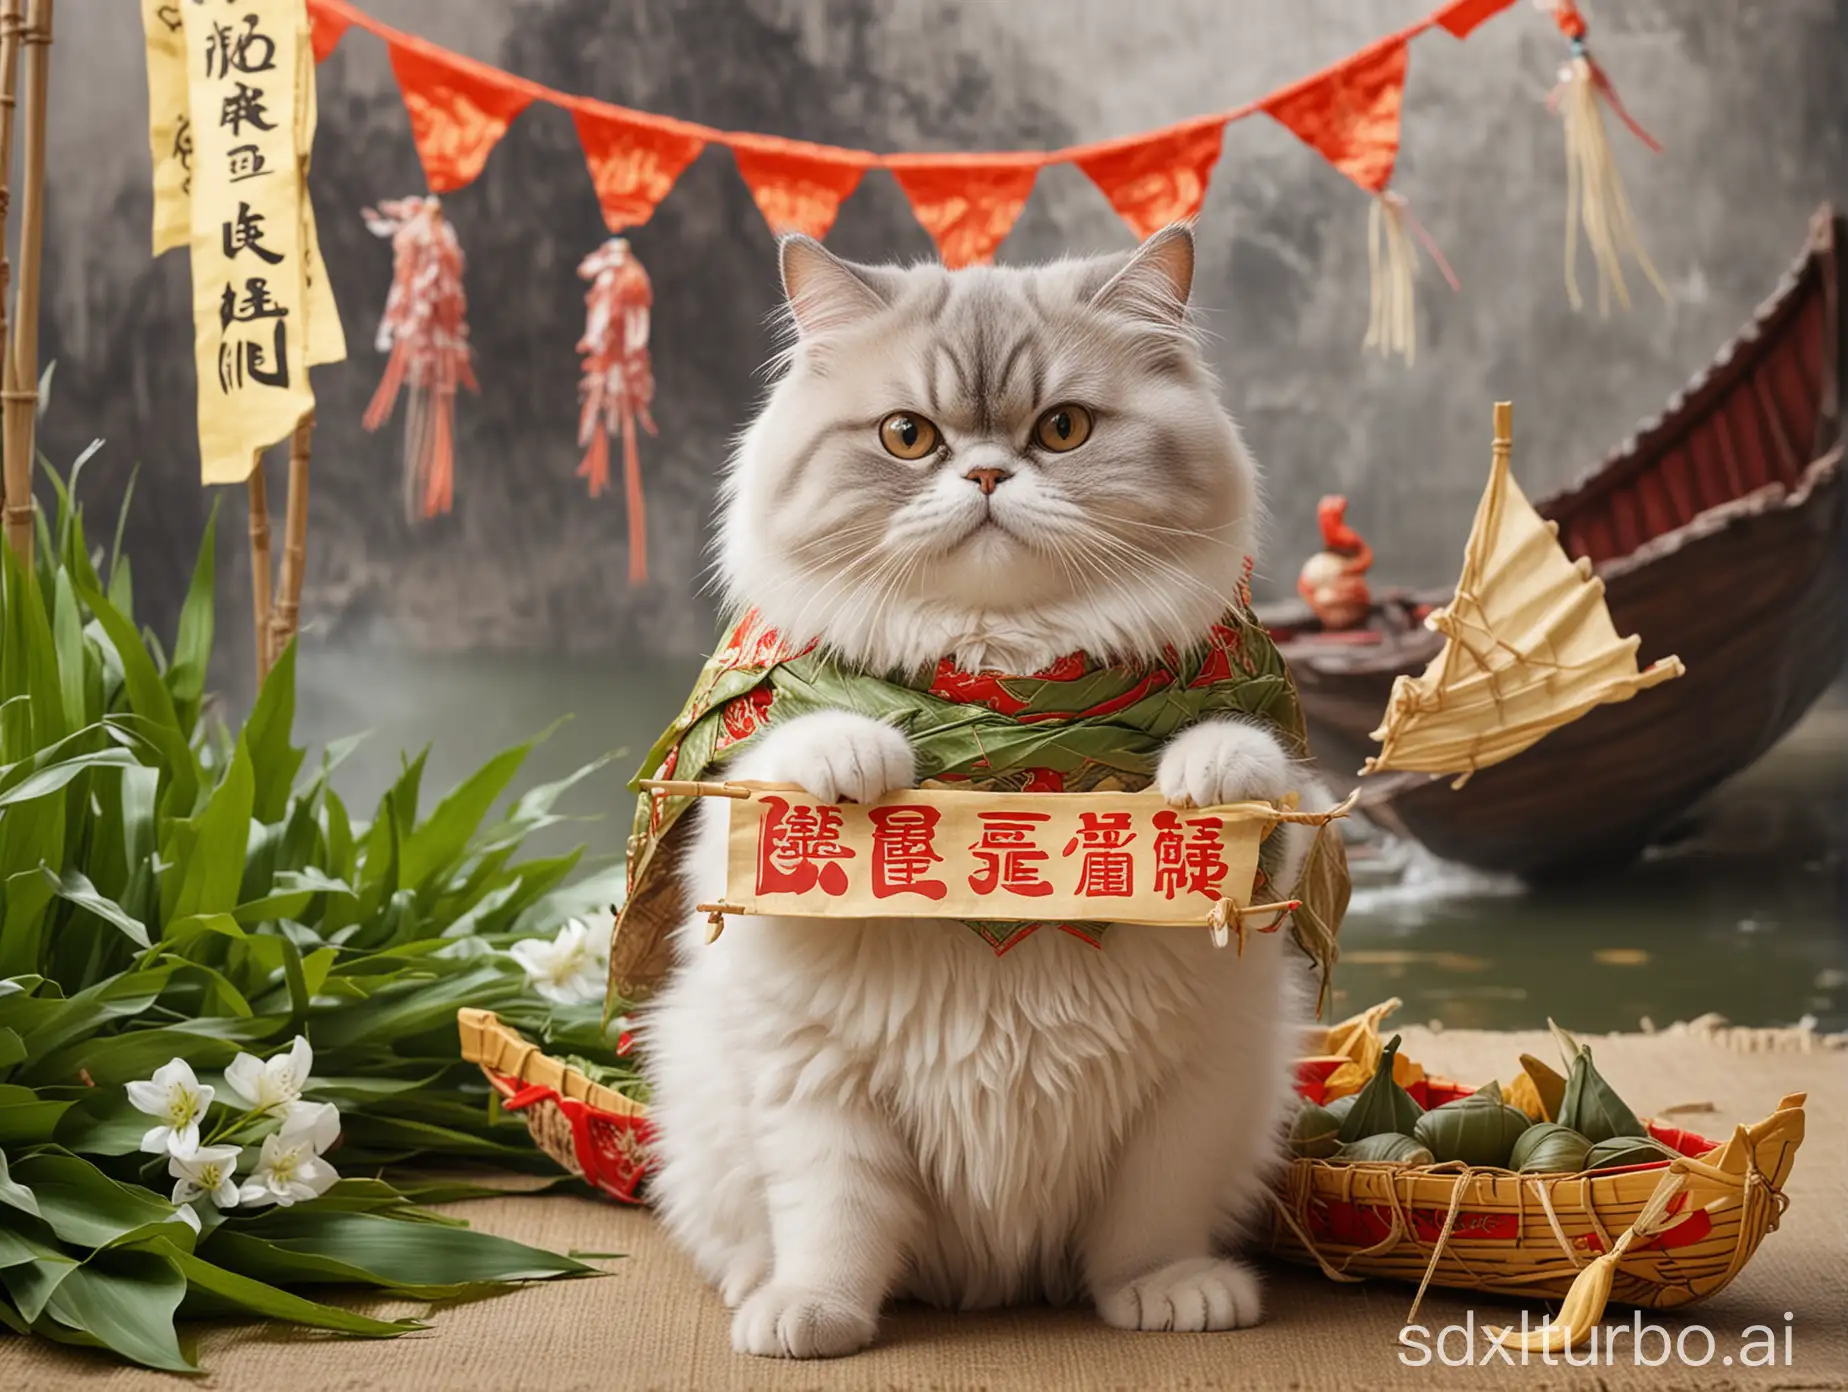 一隻毛茸茸的胖貓拿著一幅橫幅，橫幅上面寫著" Happy Dragon Boat Festival "，地板有粽子和小舟，背景有端午節元素